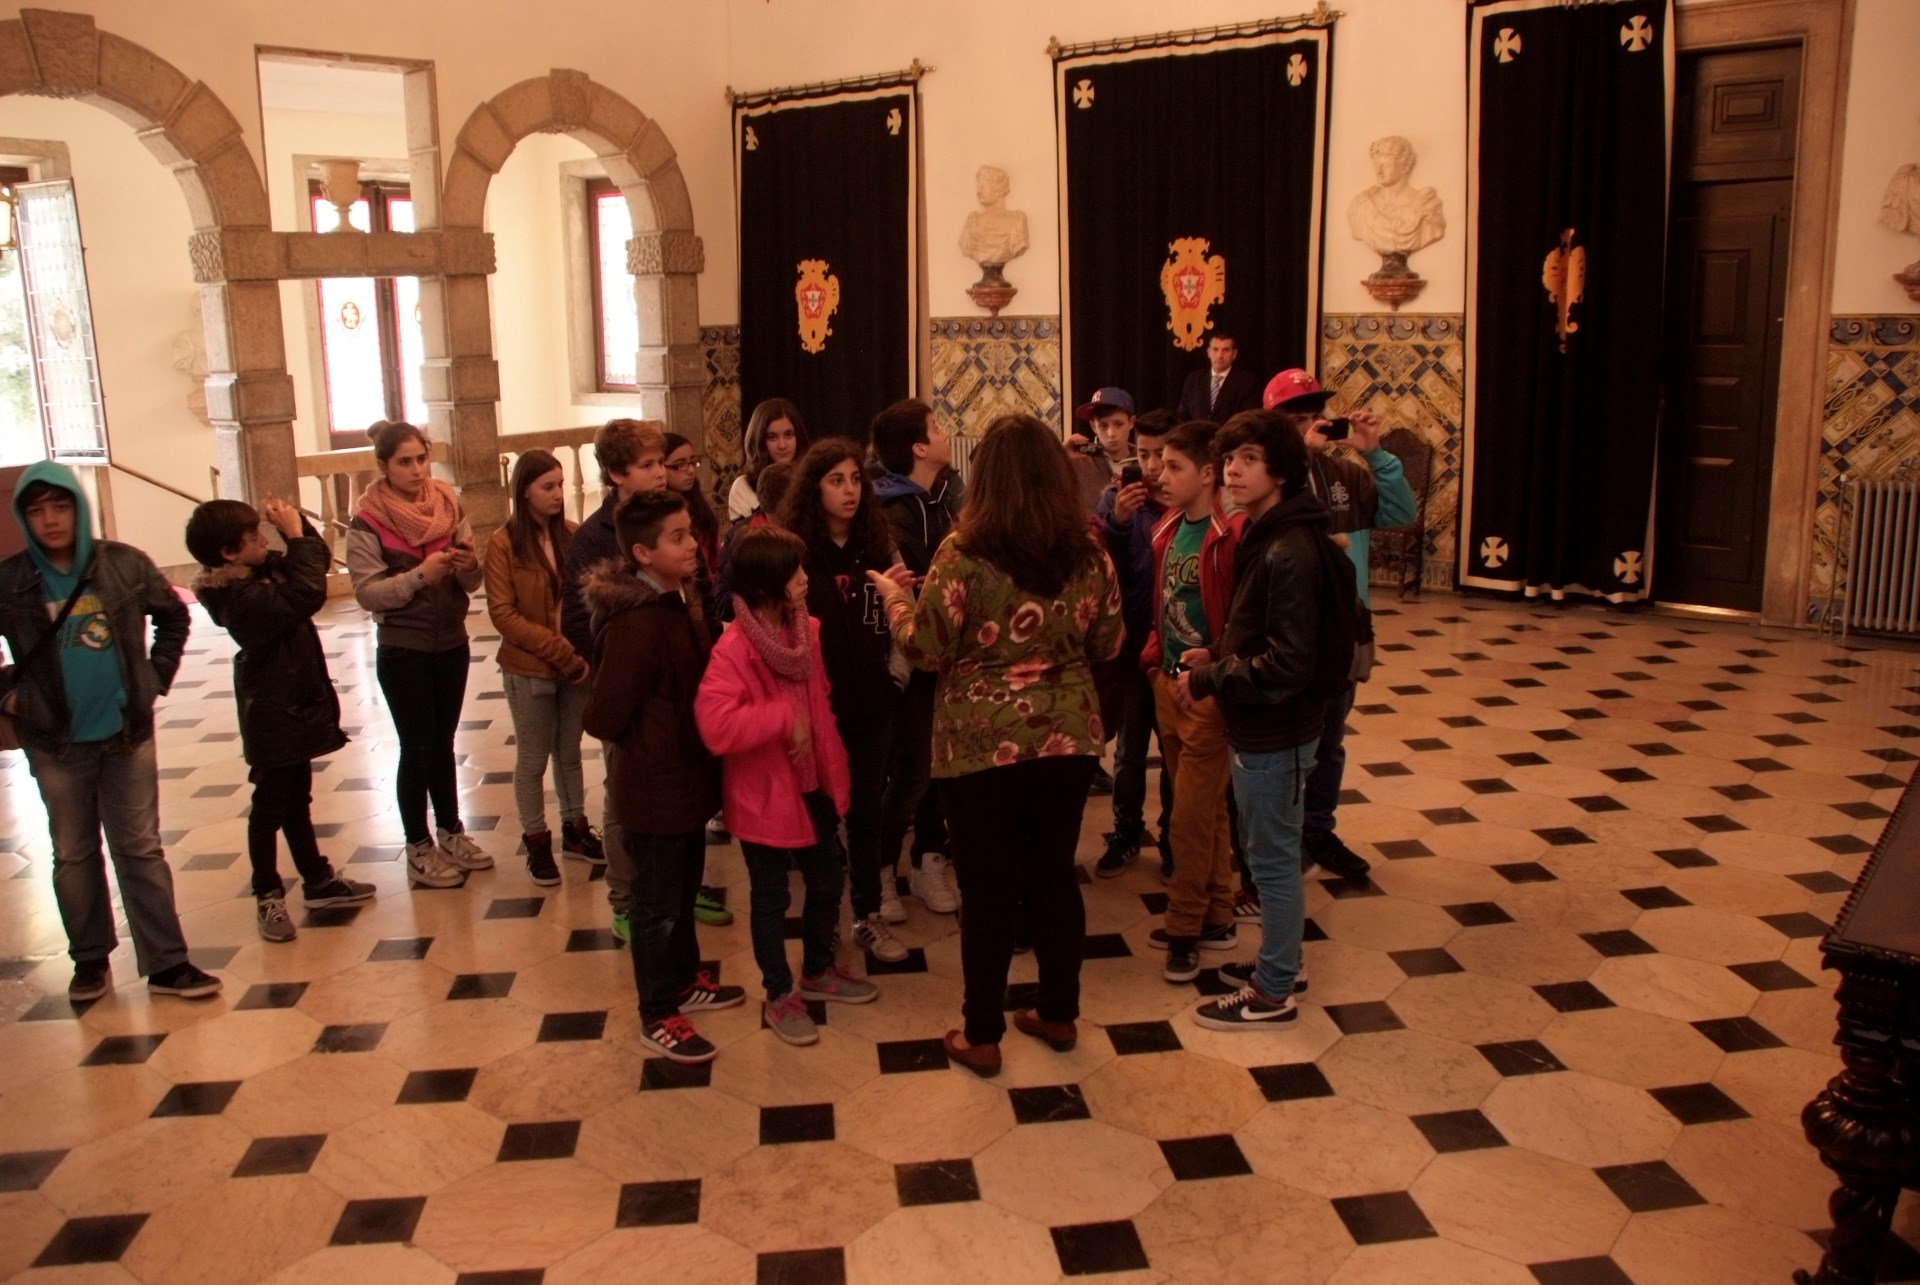 Visita guiada ao Palácio de Belém a grupo de alunos do ensino básico do distrito de Bragança.